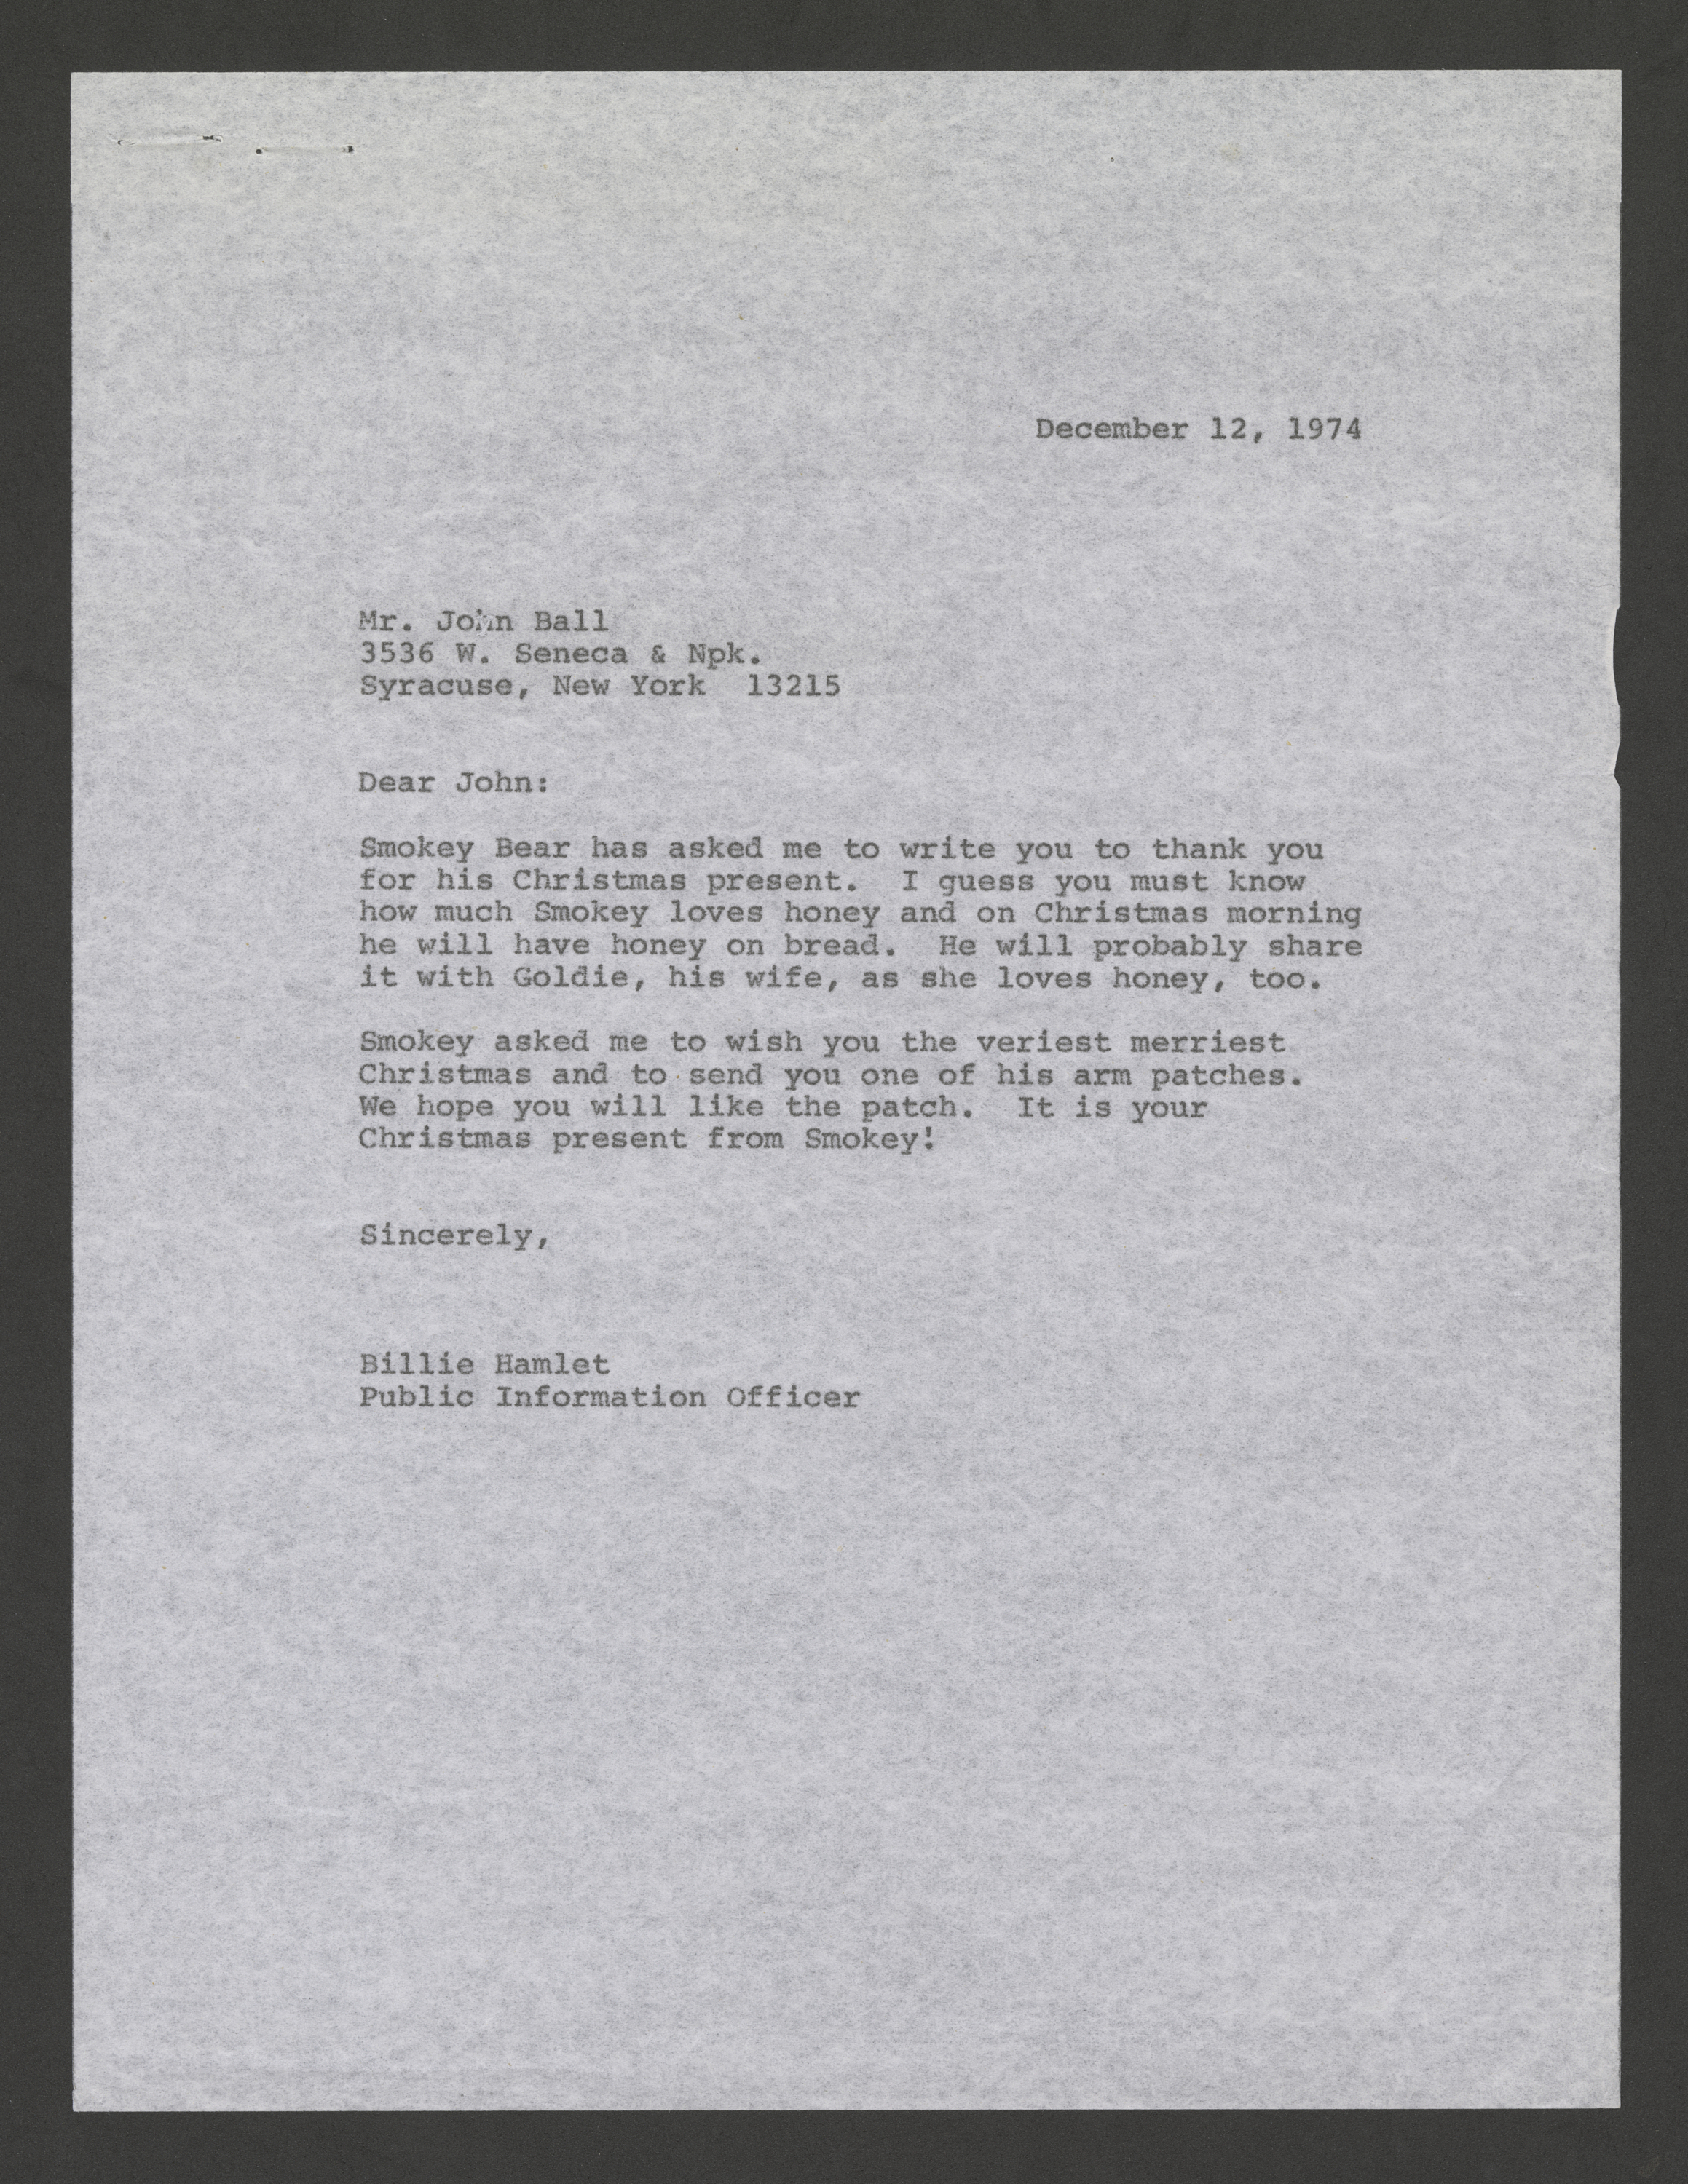 Letter from Billie Hamlet to John Ball.